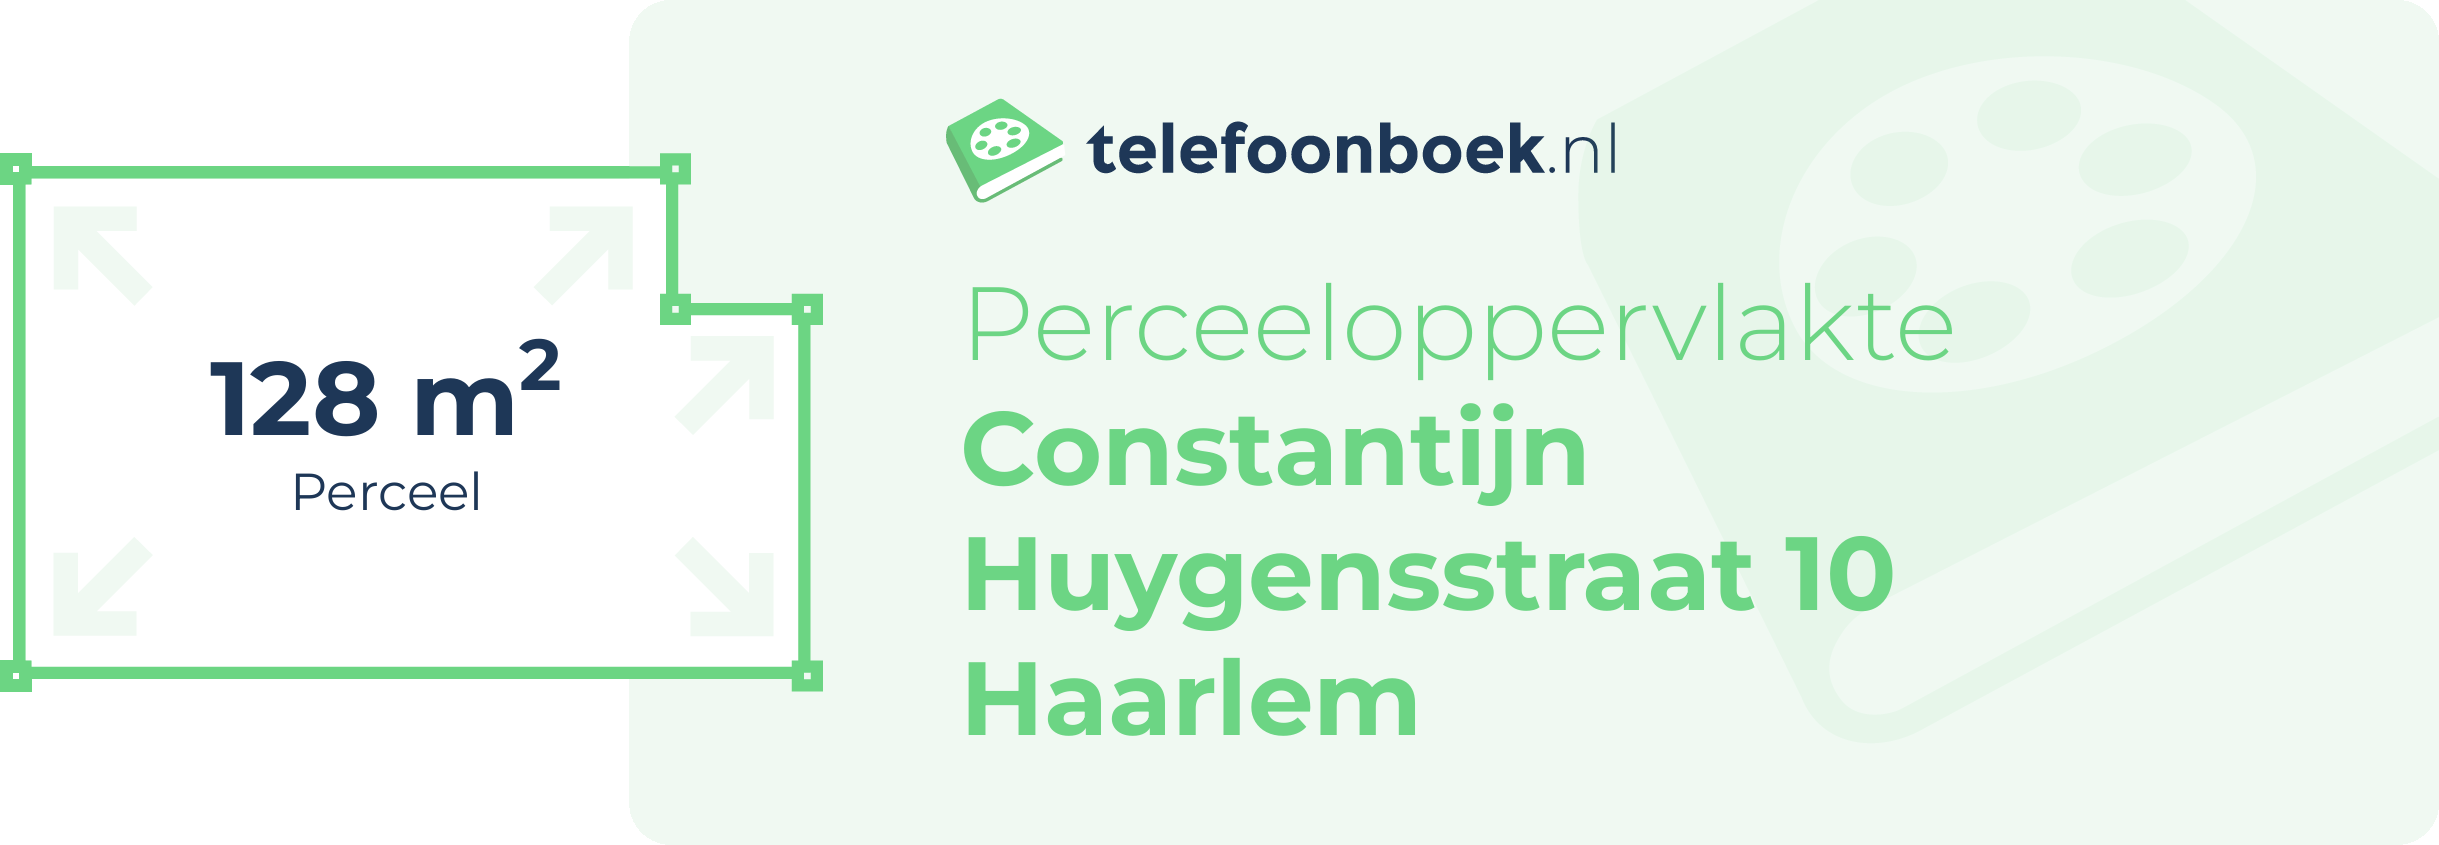 Perceeloppervlakte Constantijn Huygensstraat 10 Haarlem